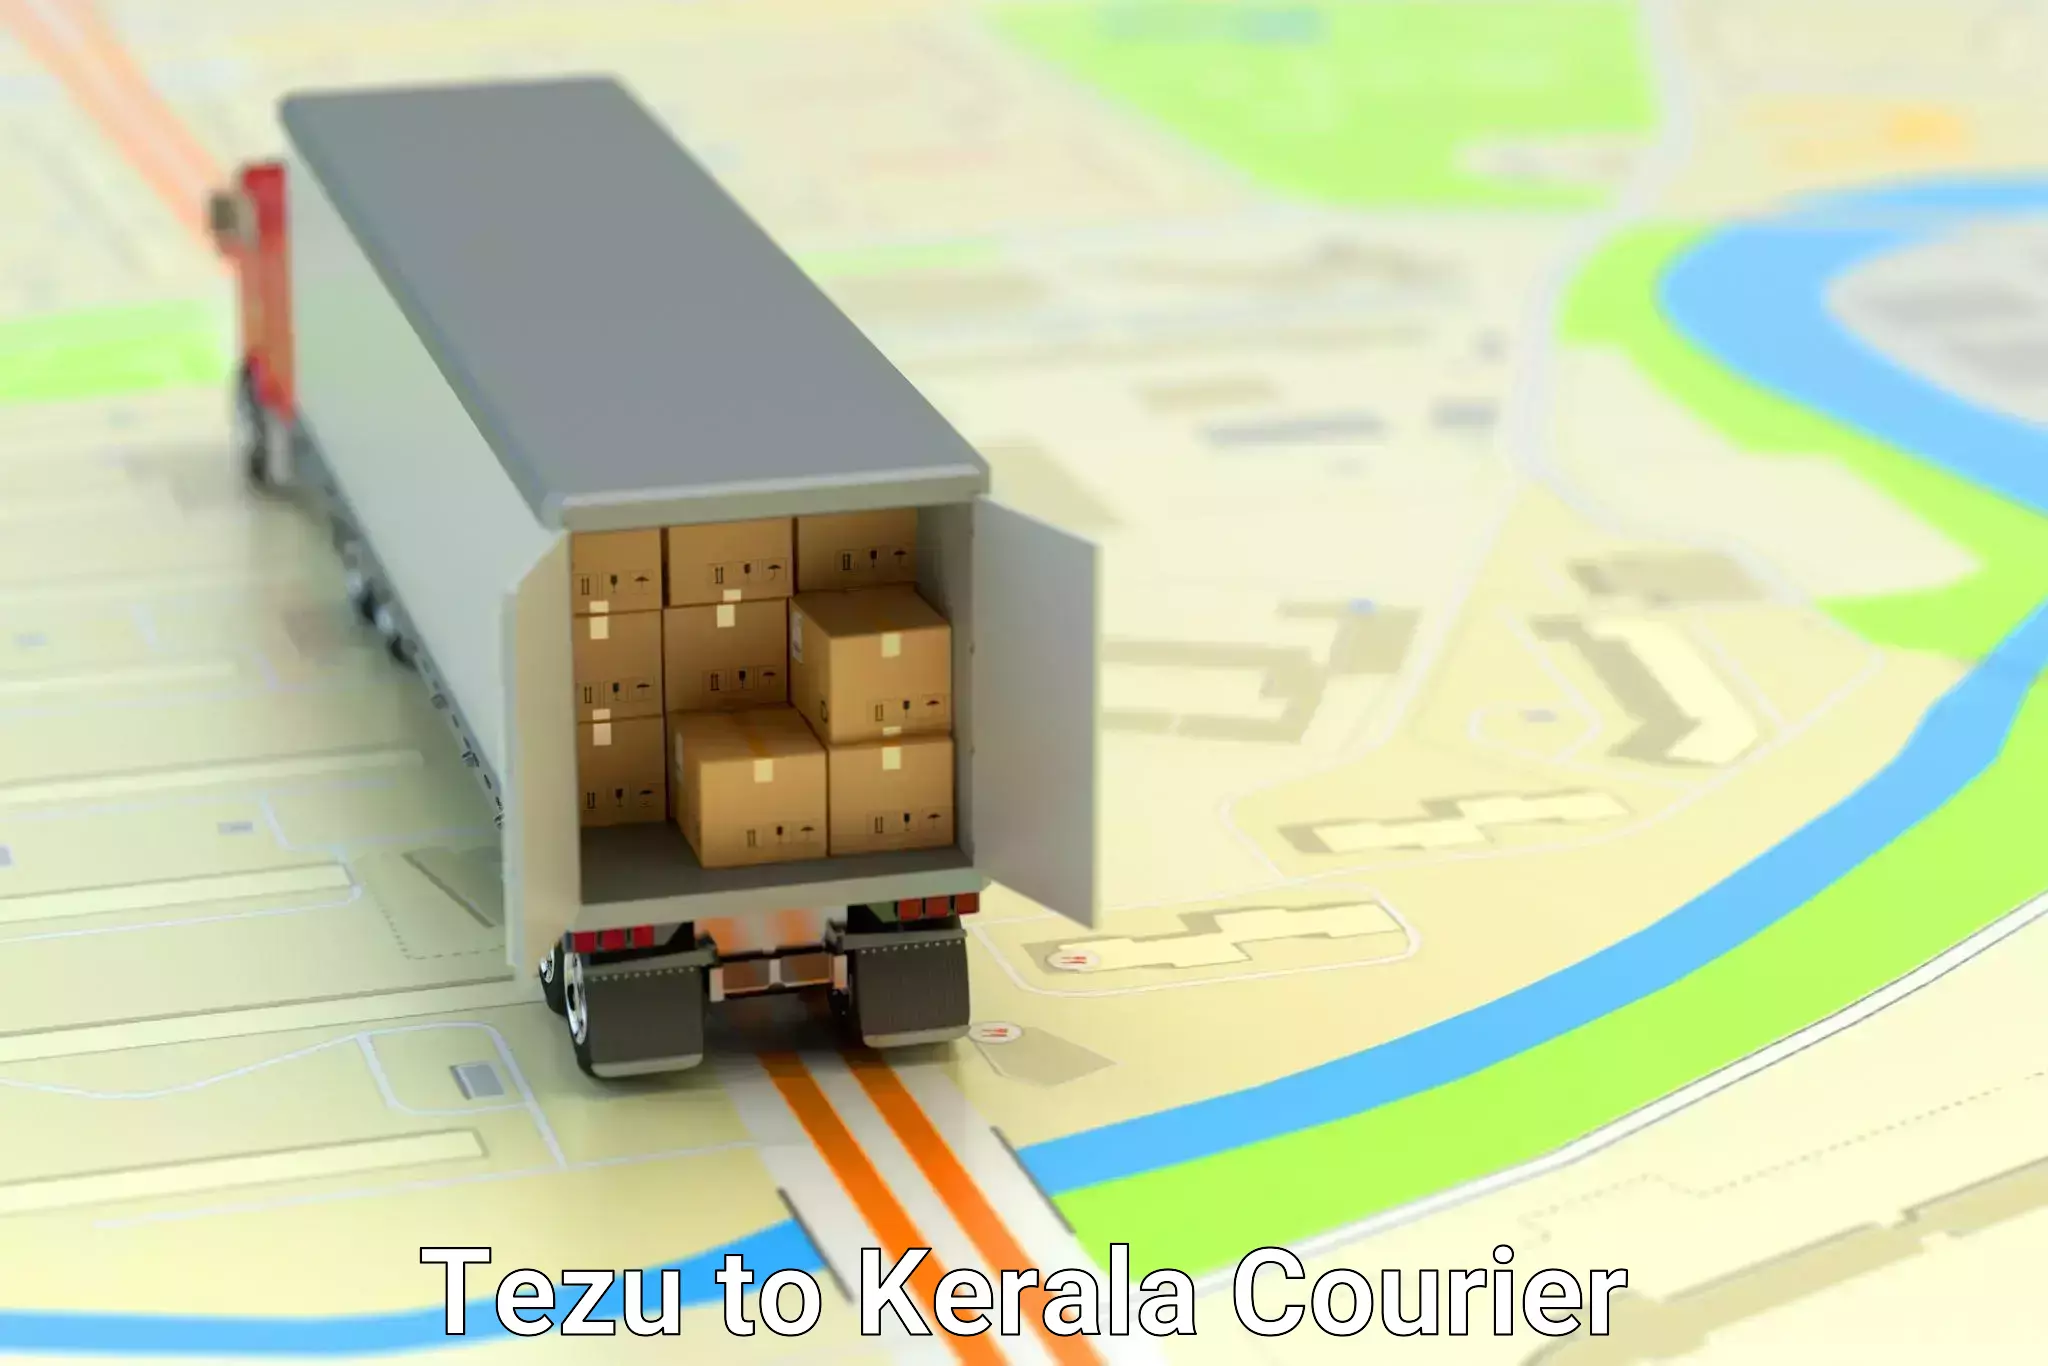 User-friendly courier app Tezu to Pazhayannur